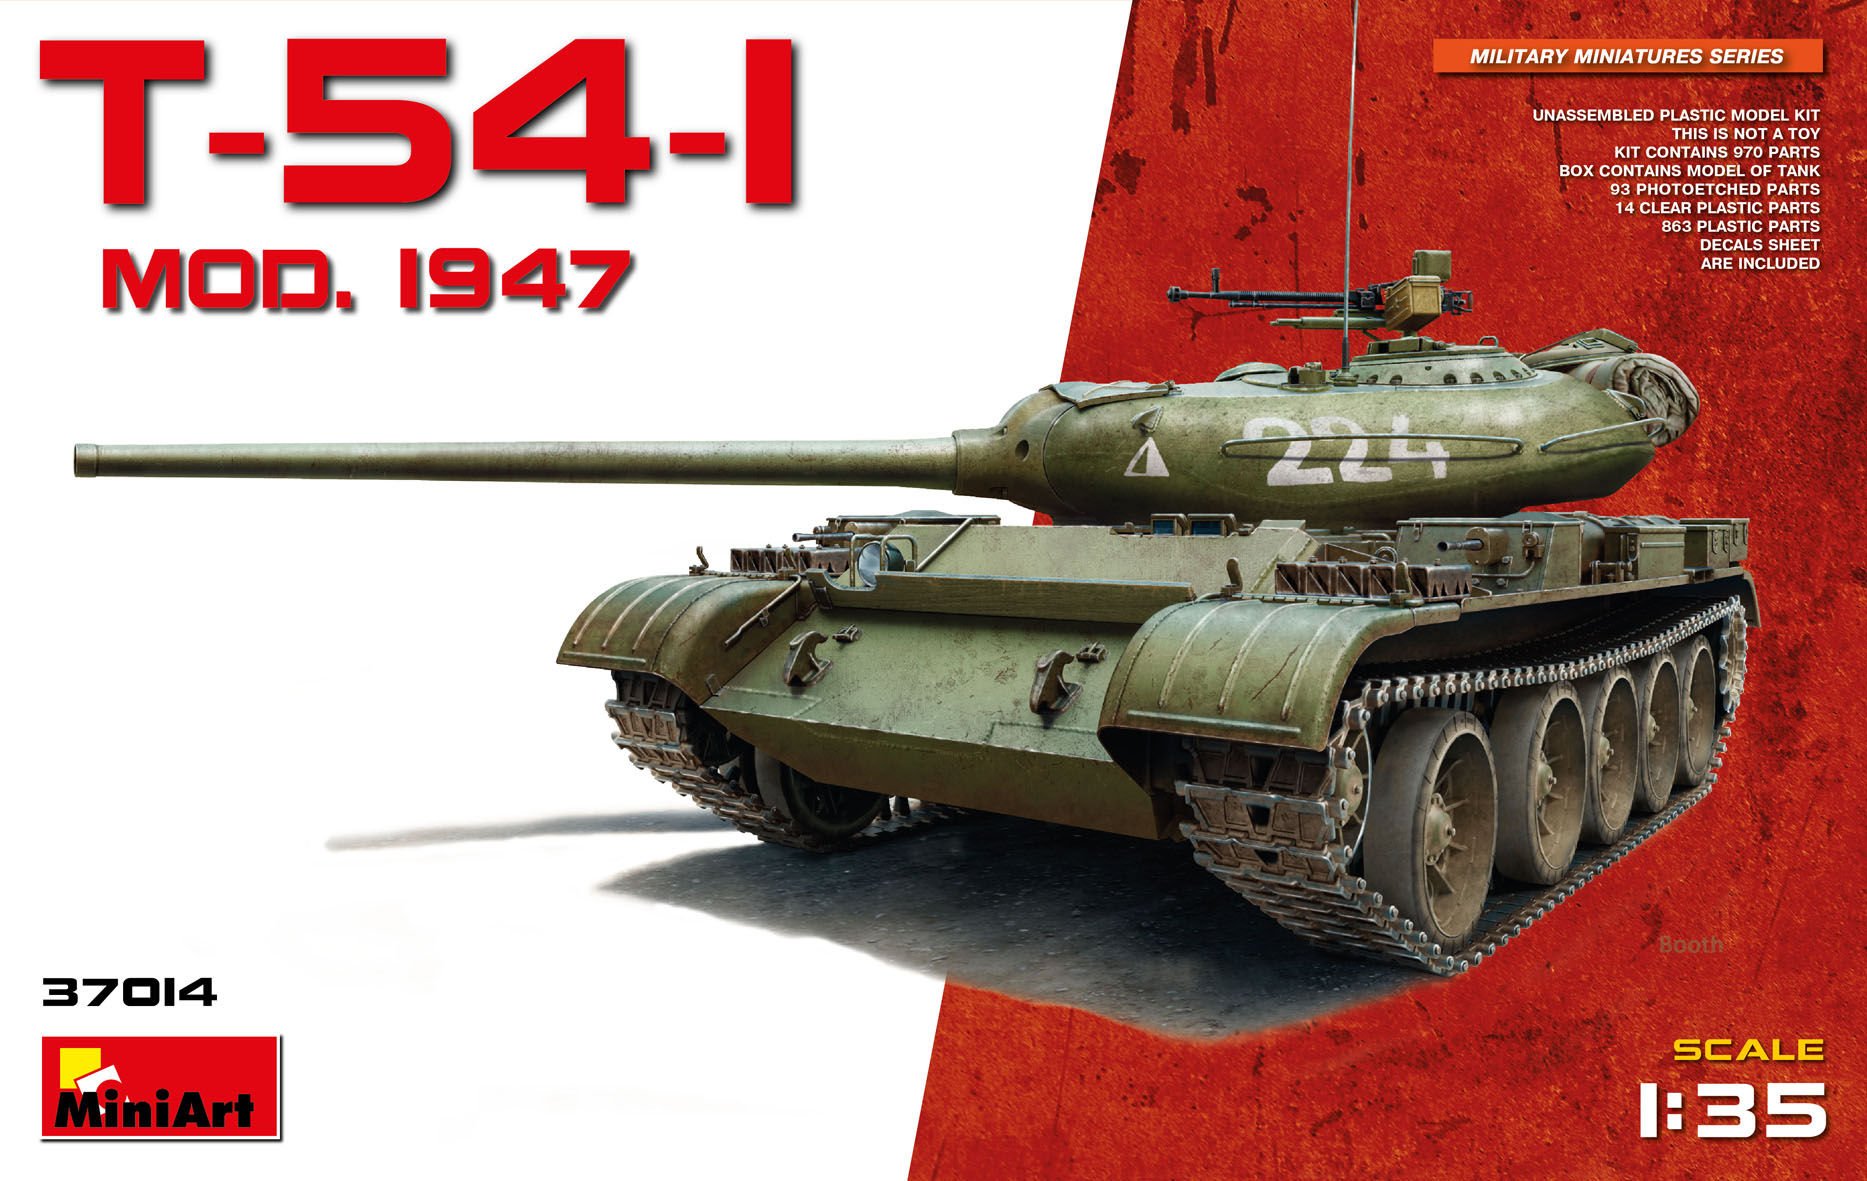 Mini Art 37014 1:35 T-54-1 Sov. Mittlerer Panzer-originalgetreue Nachbildung, Modellbau, Plastik Bausatz, Basteln, Hobby, Kleben, Modellbausatz, Zusammenbauen, unlackiert